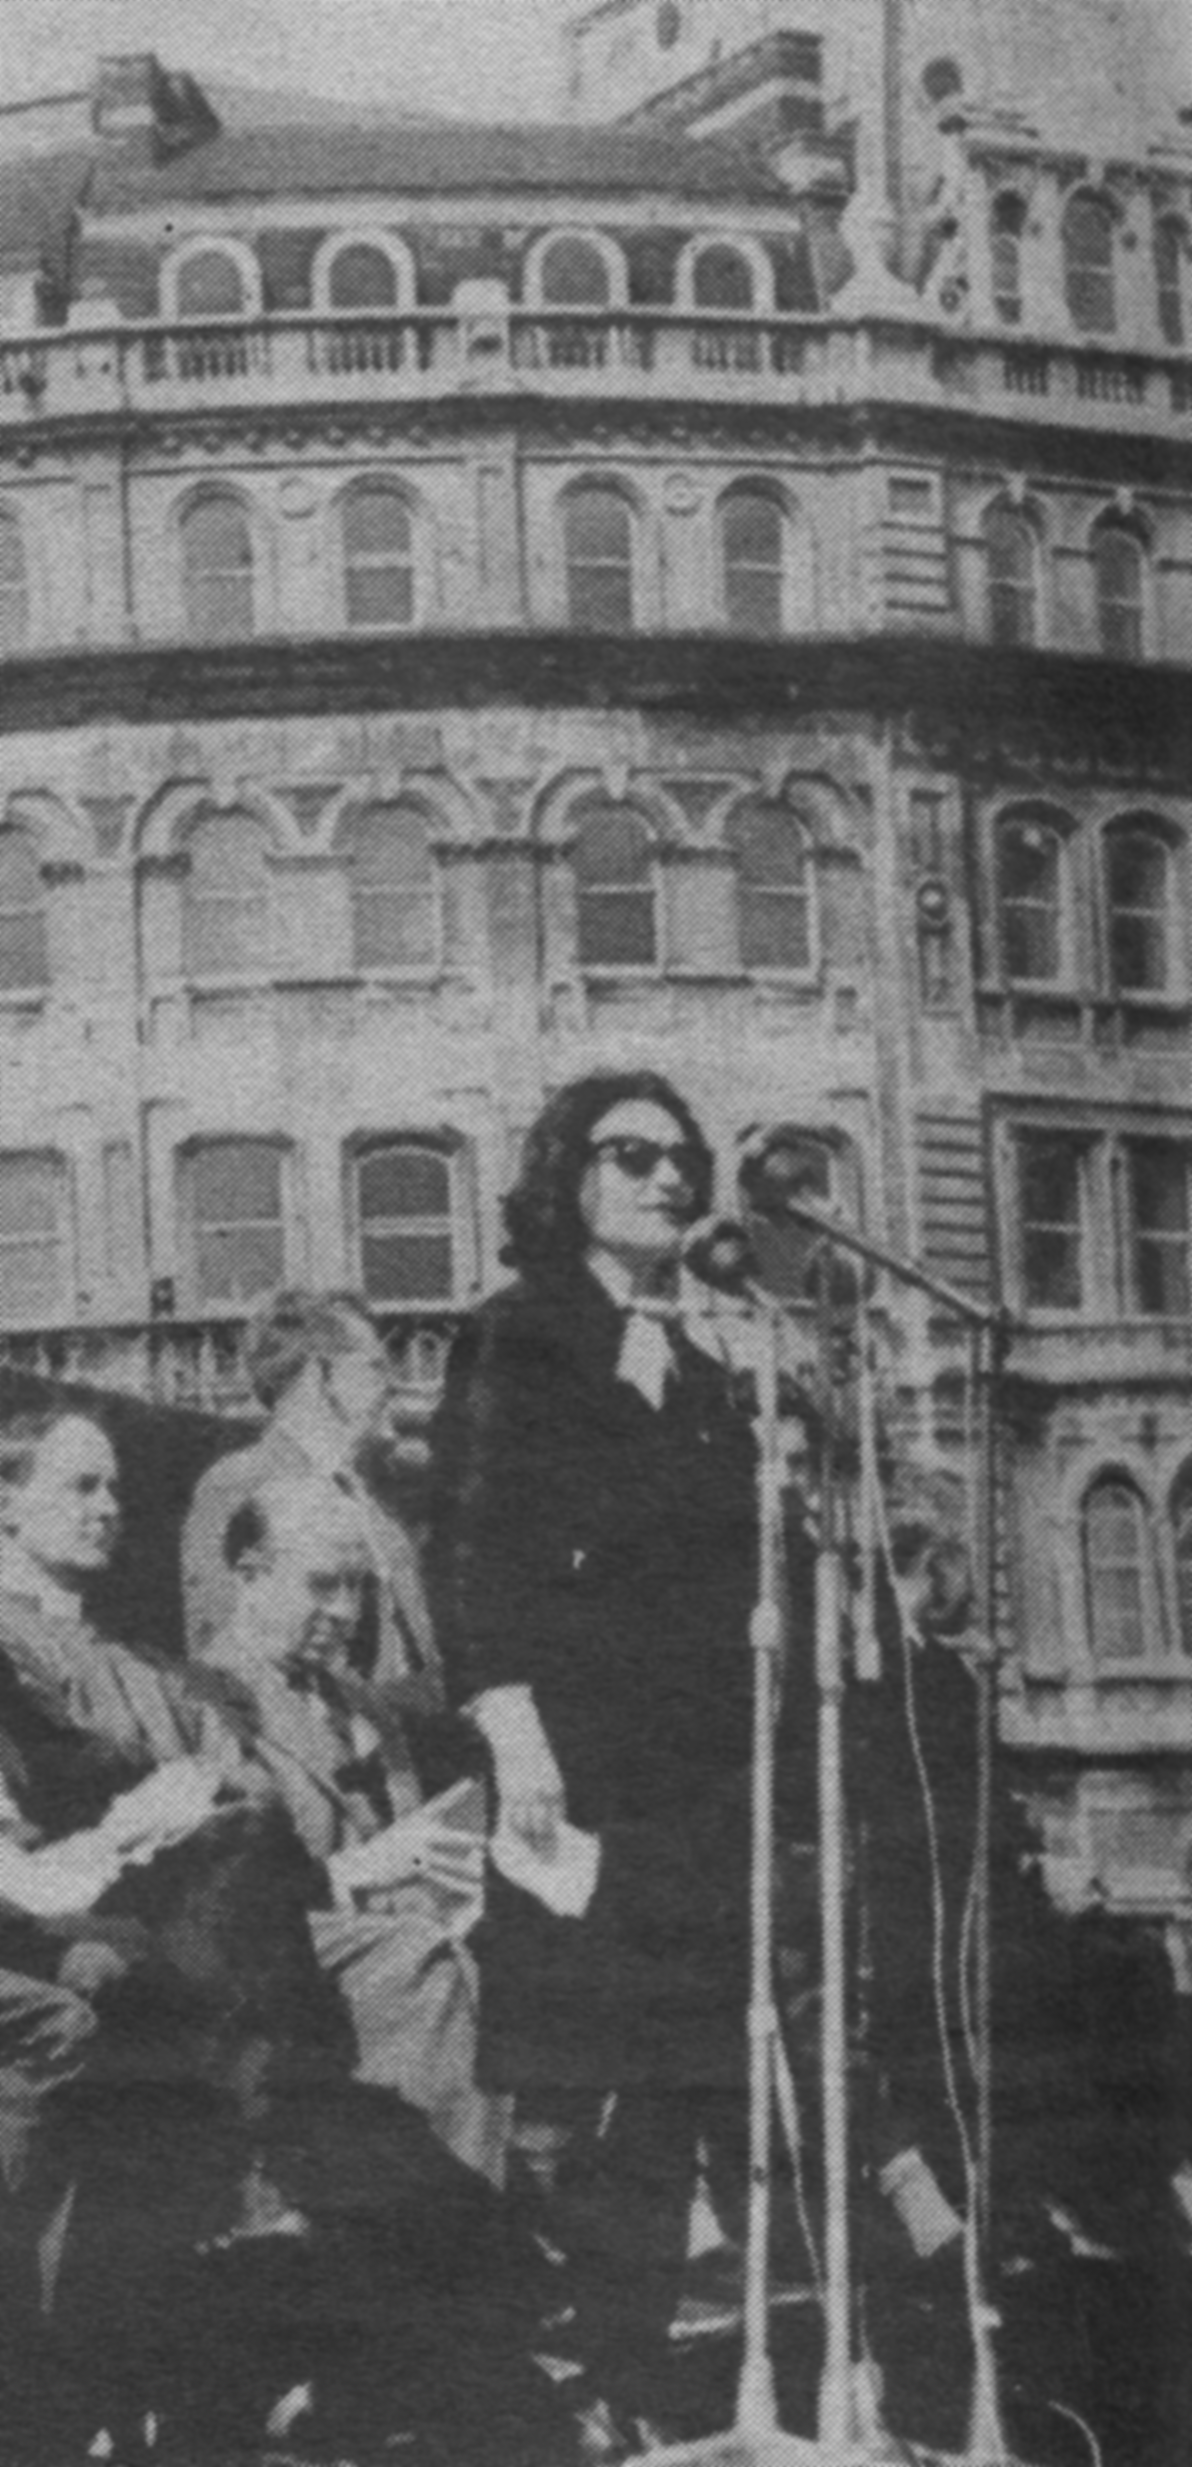 Ruth speaking in Trafalgar Square, London